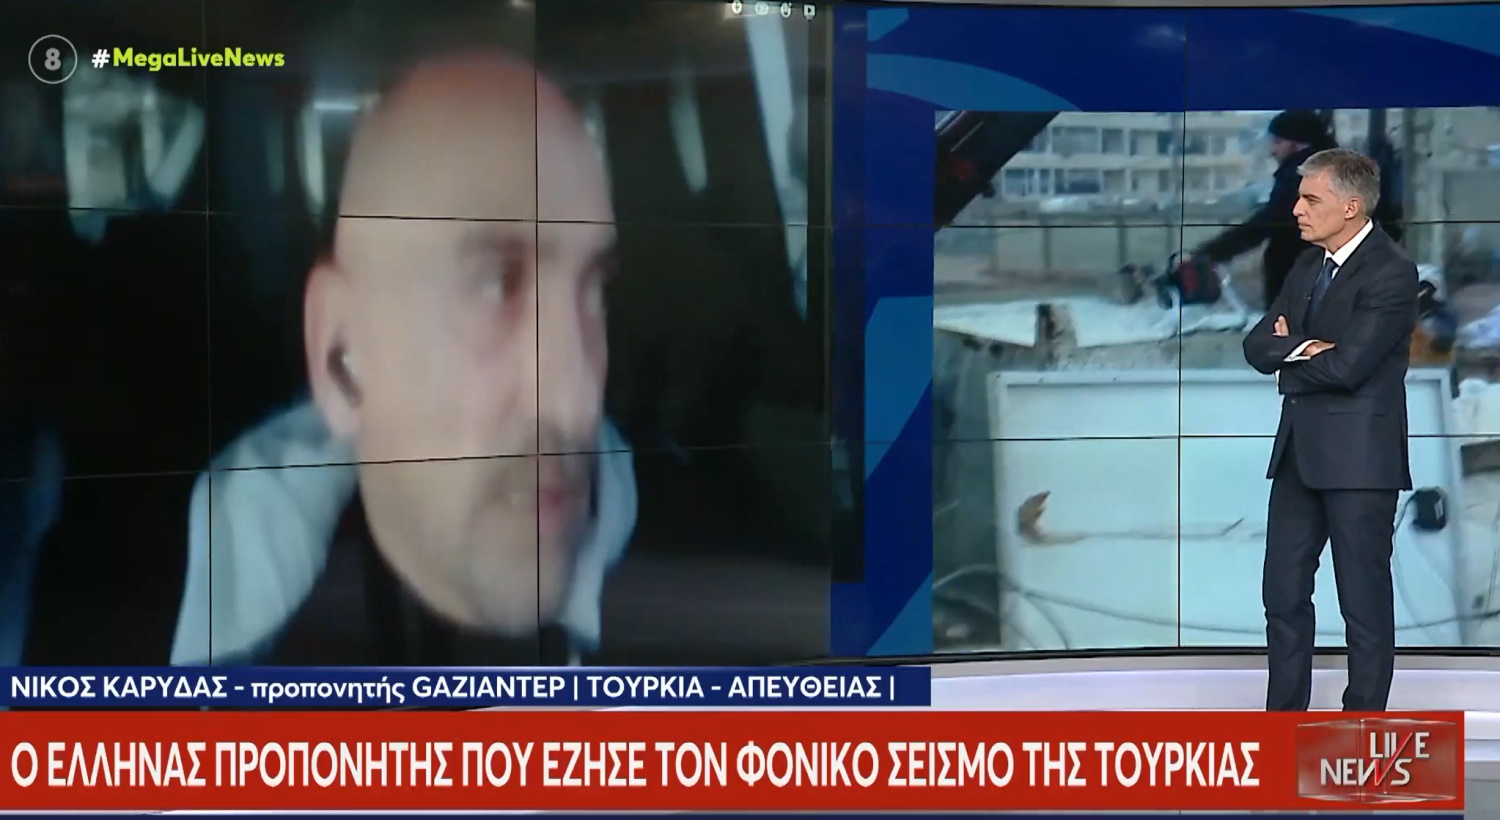 Ο γυμναστής της Γκαζιαντέπ, Νίκος Καρύδας, για τους σεισμούς στην Τουρκία: «Οι περισσότεροι δεν ρισκάρουν να πάνε στα σπίτια τους»